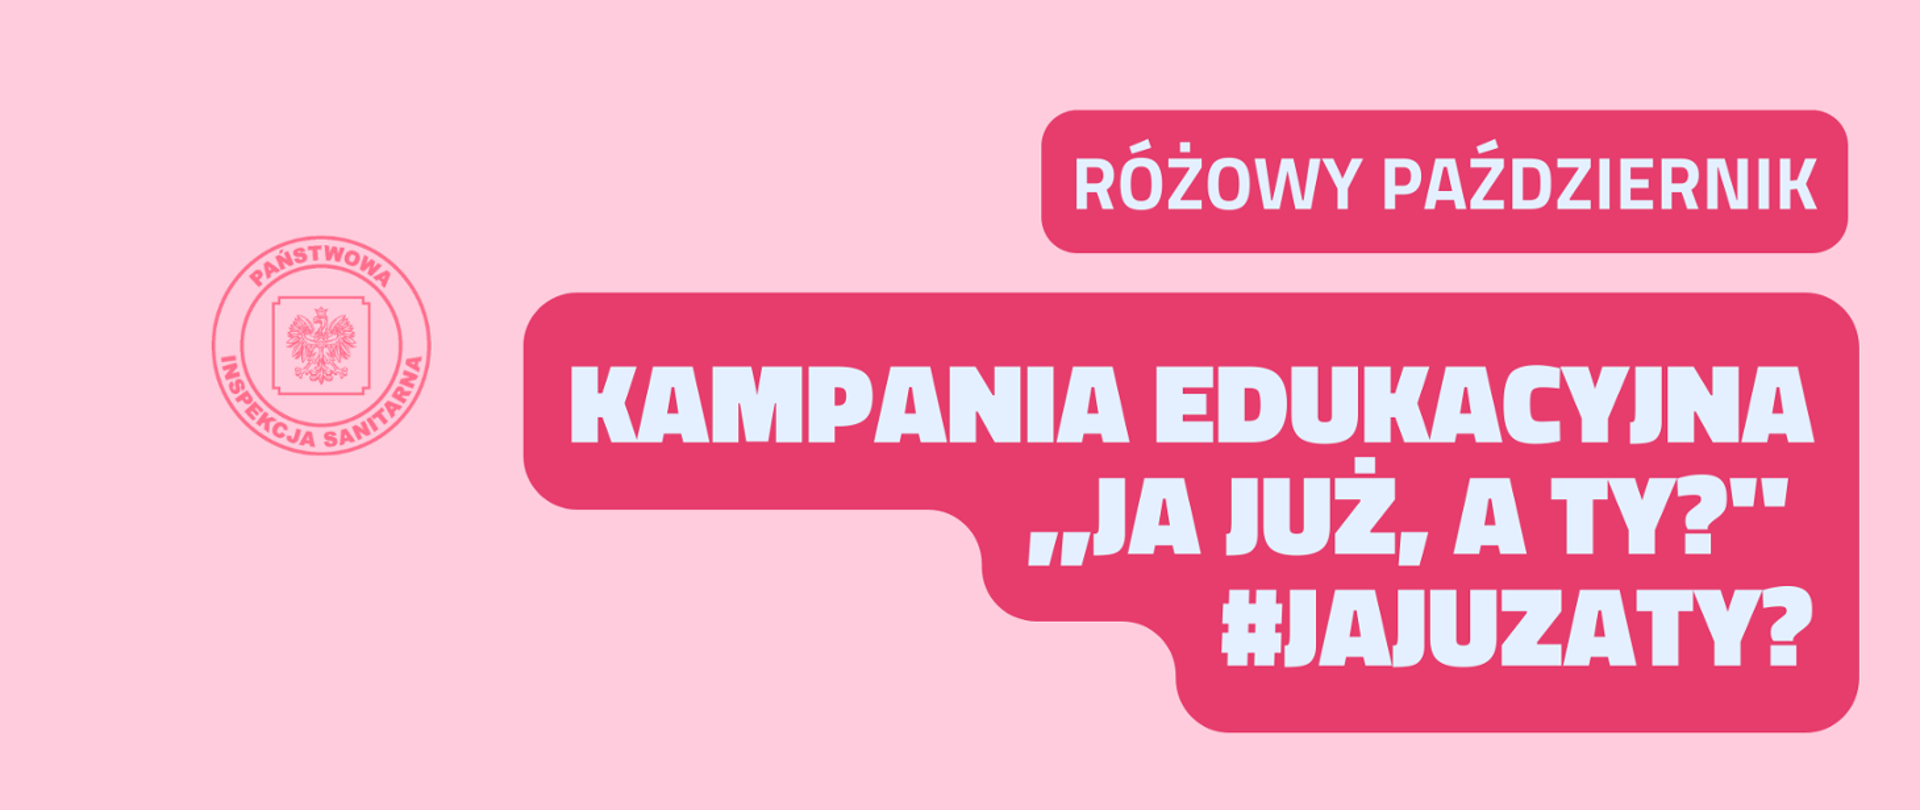 Kampania edukacyjna różowy październik